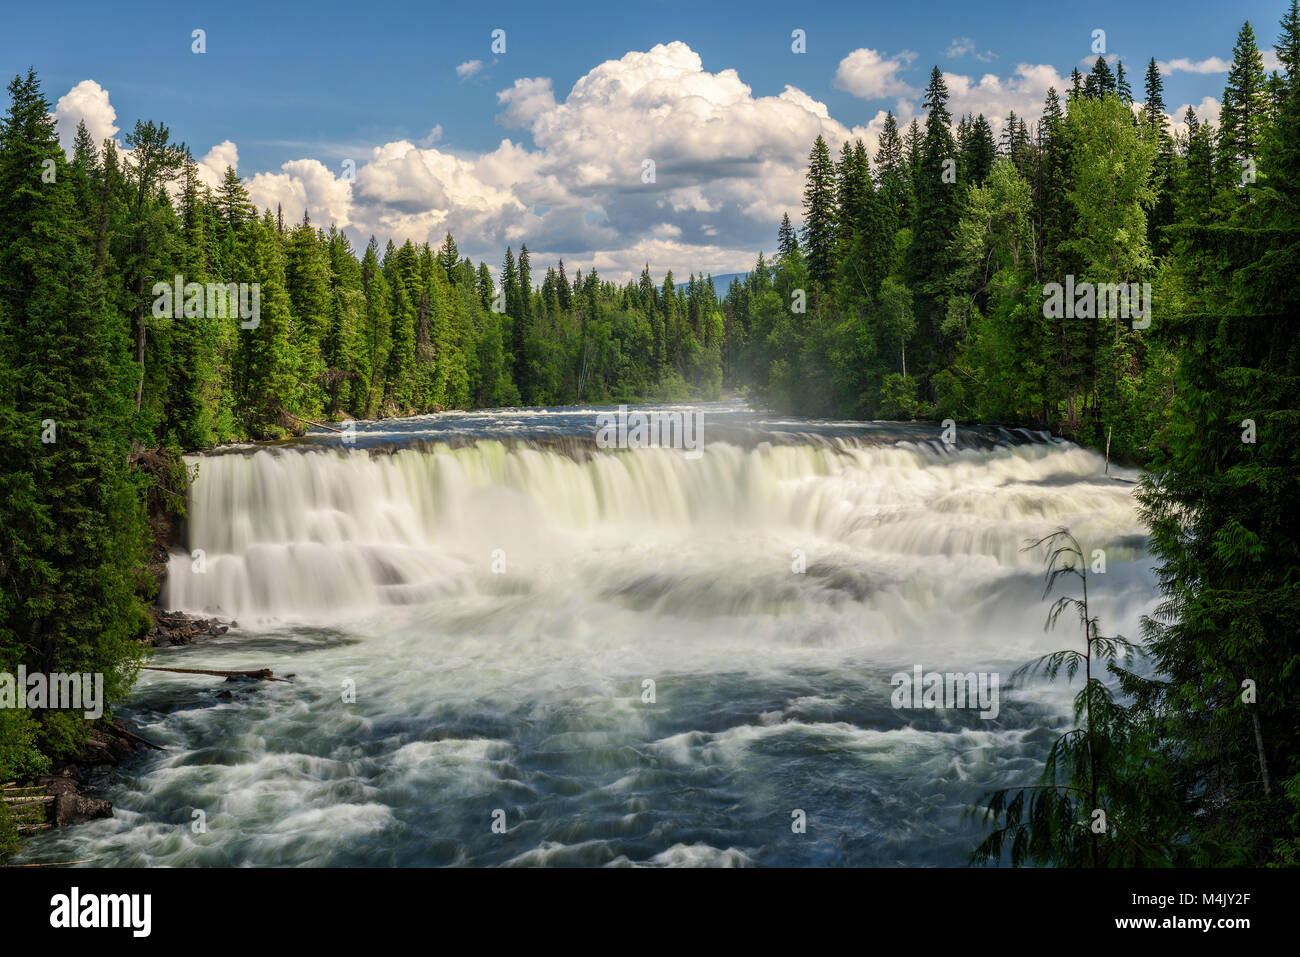 Dawson Falls on the Murtle River in Canada Stock Photo